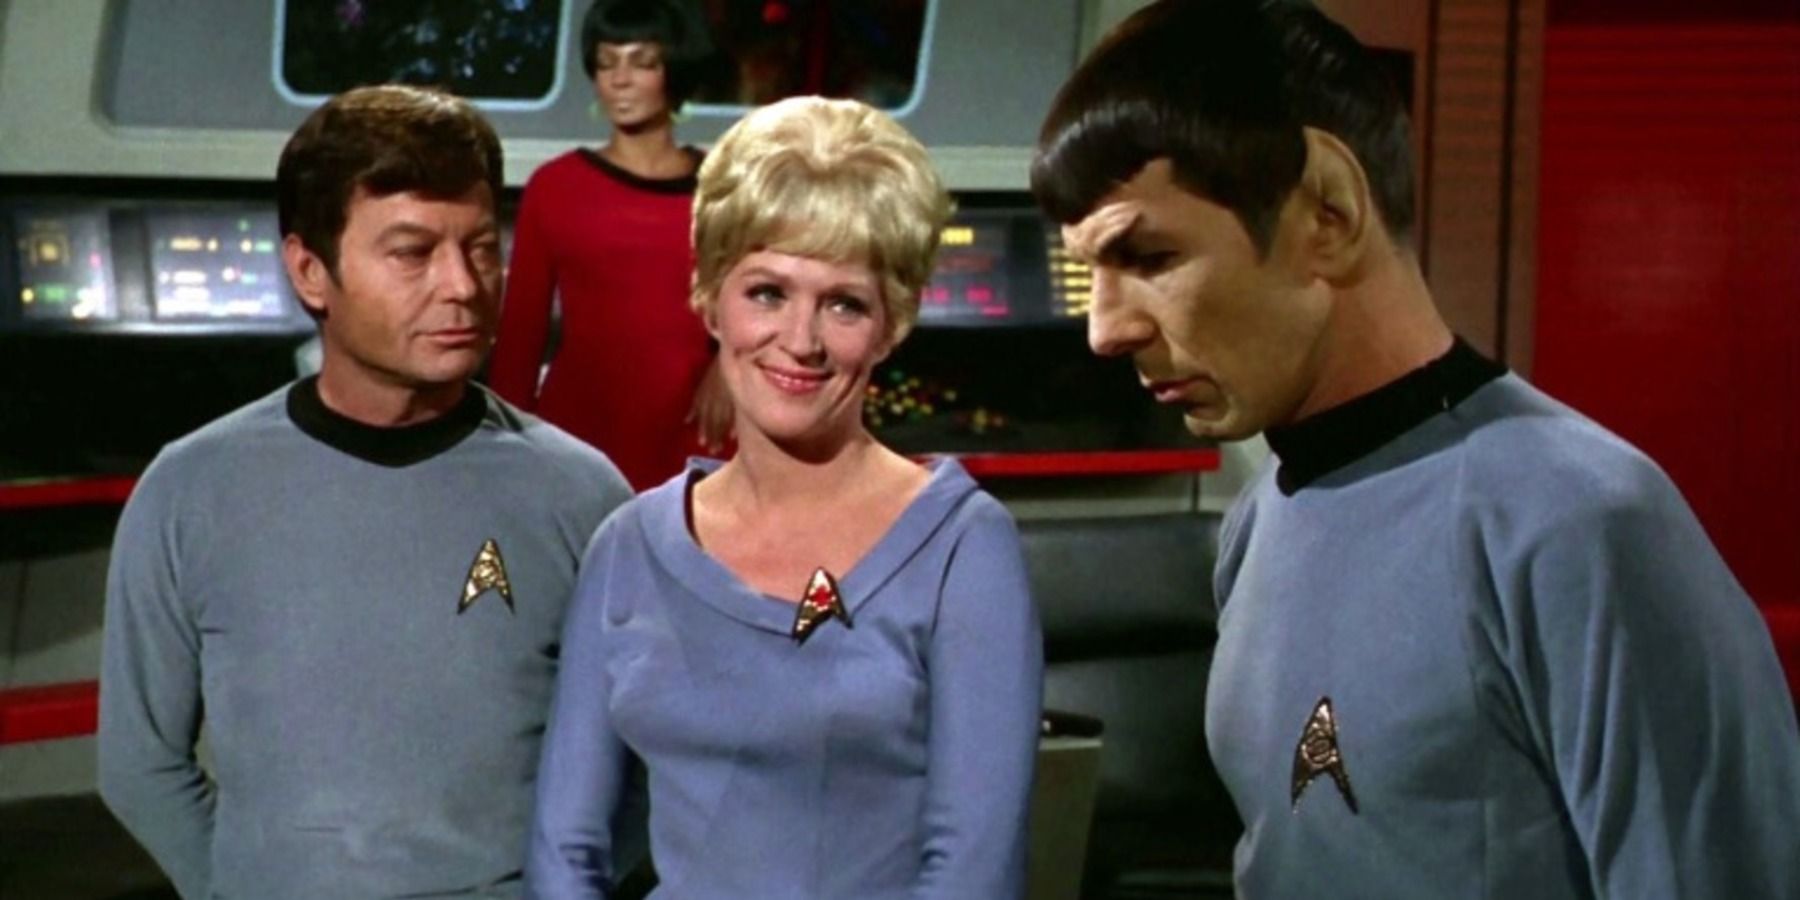 Christine Chapel Star Trek TOS na ponte com Bones e Spock